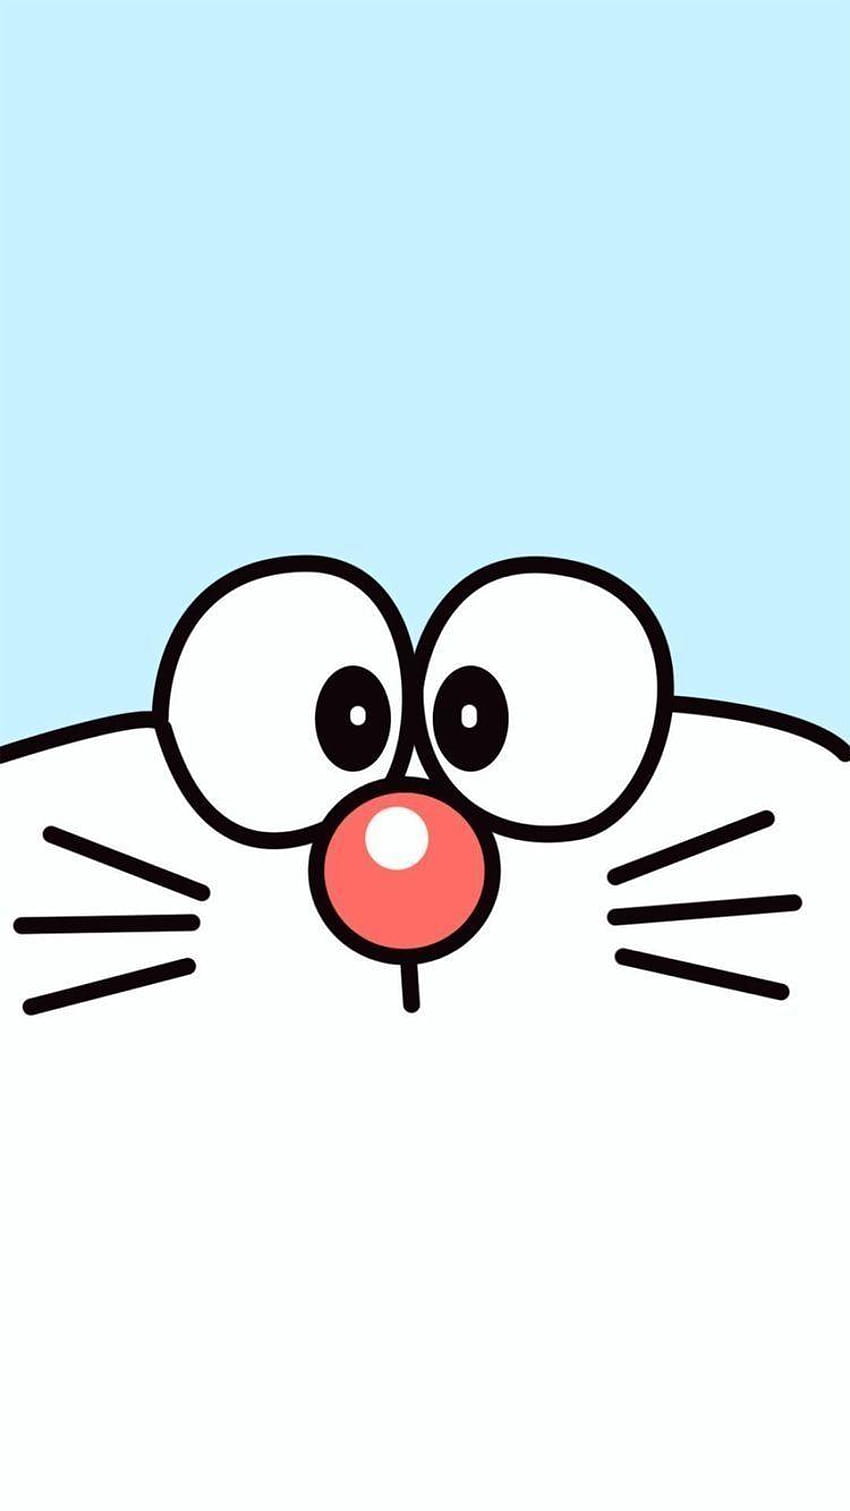 Doraemon - một chú mèo máy đáng yêu và đầy tài năng. Hình ảnh của anh ấy sẽ được tìm thấy trong bộ sưu tập đáng yêu này, sẽ khiến cho bạn đầy niềm vui. Hãy xem ngay!